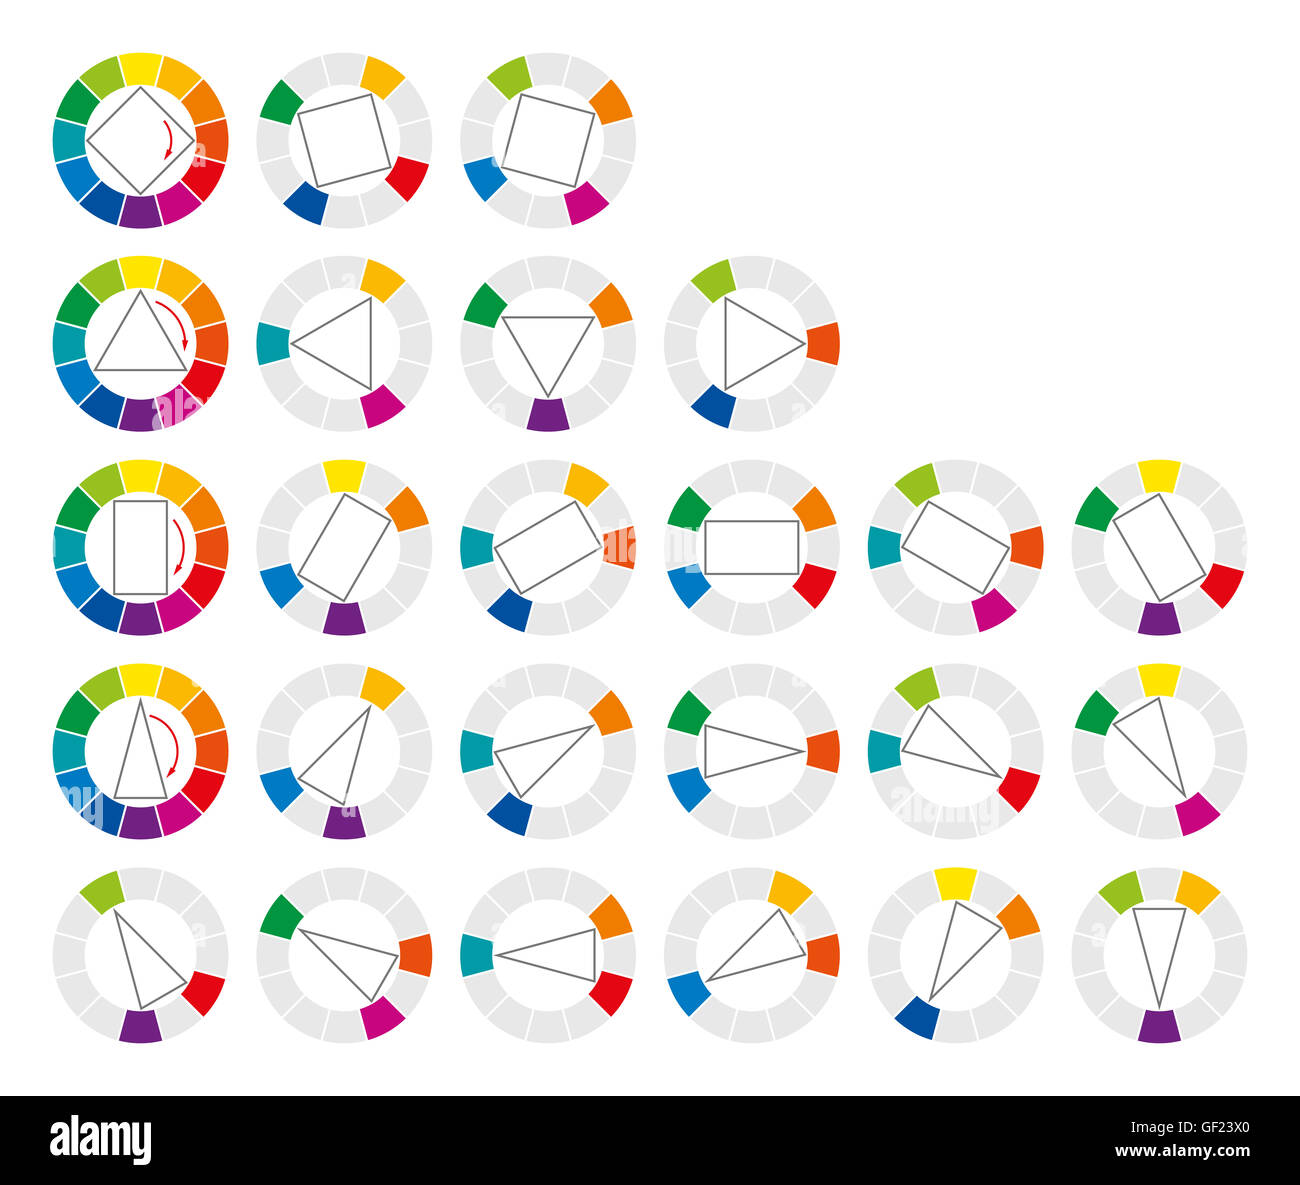 Roue des couleurs et formes géométriques montrant vingt possible harmonique complémentaires et les combinaisons de couleurs dans l'art. Banque D'Images